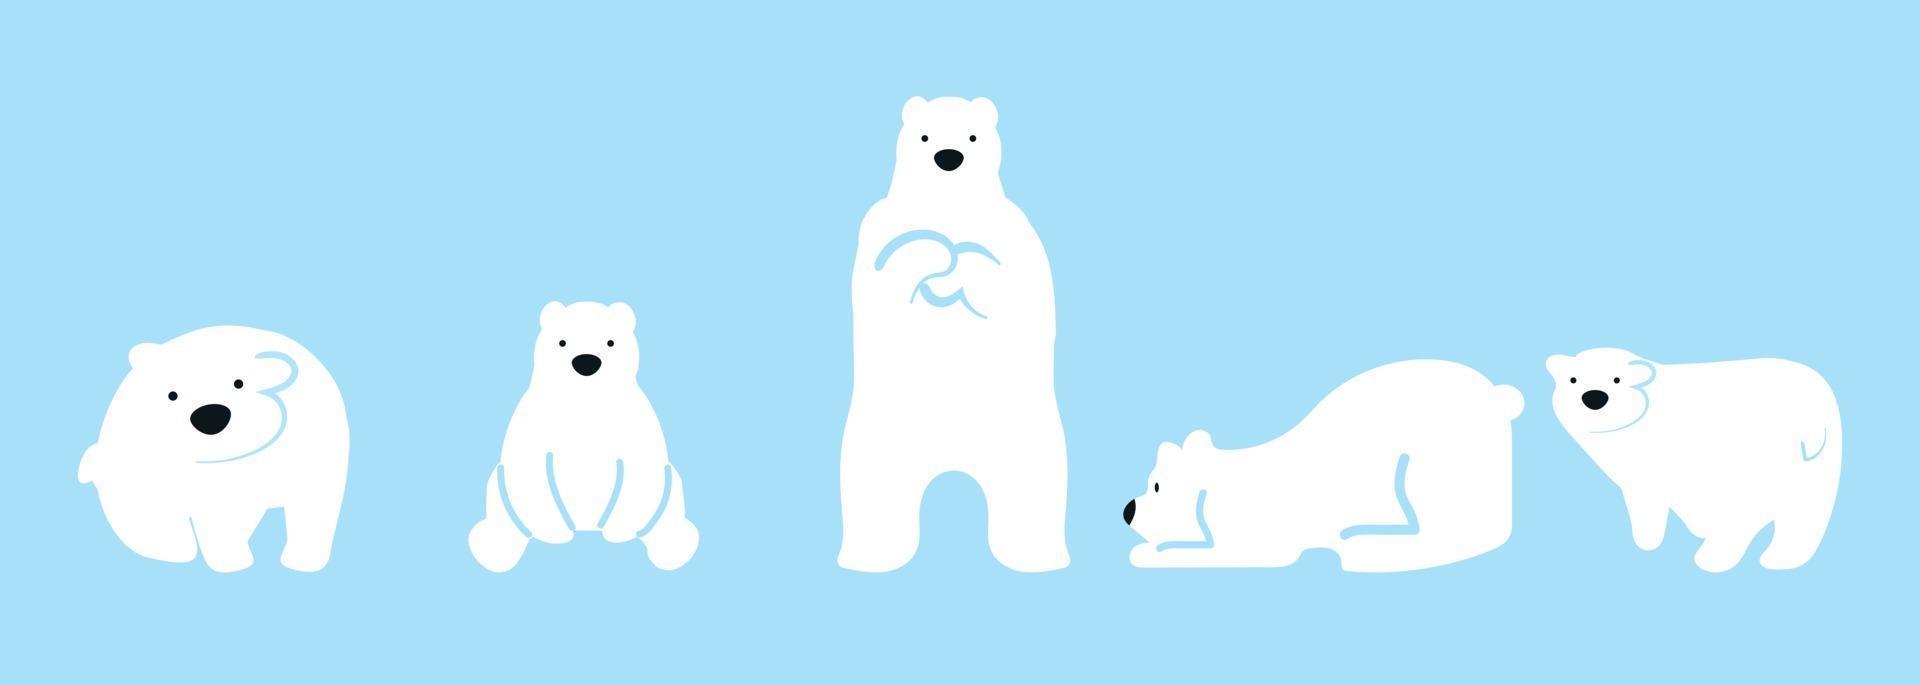 jeu de caractères drôle mignon ours polaire vecteur